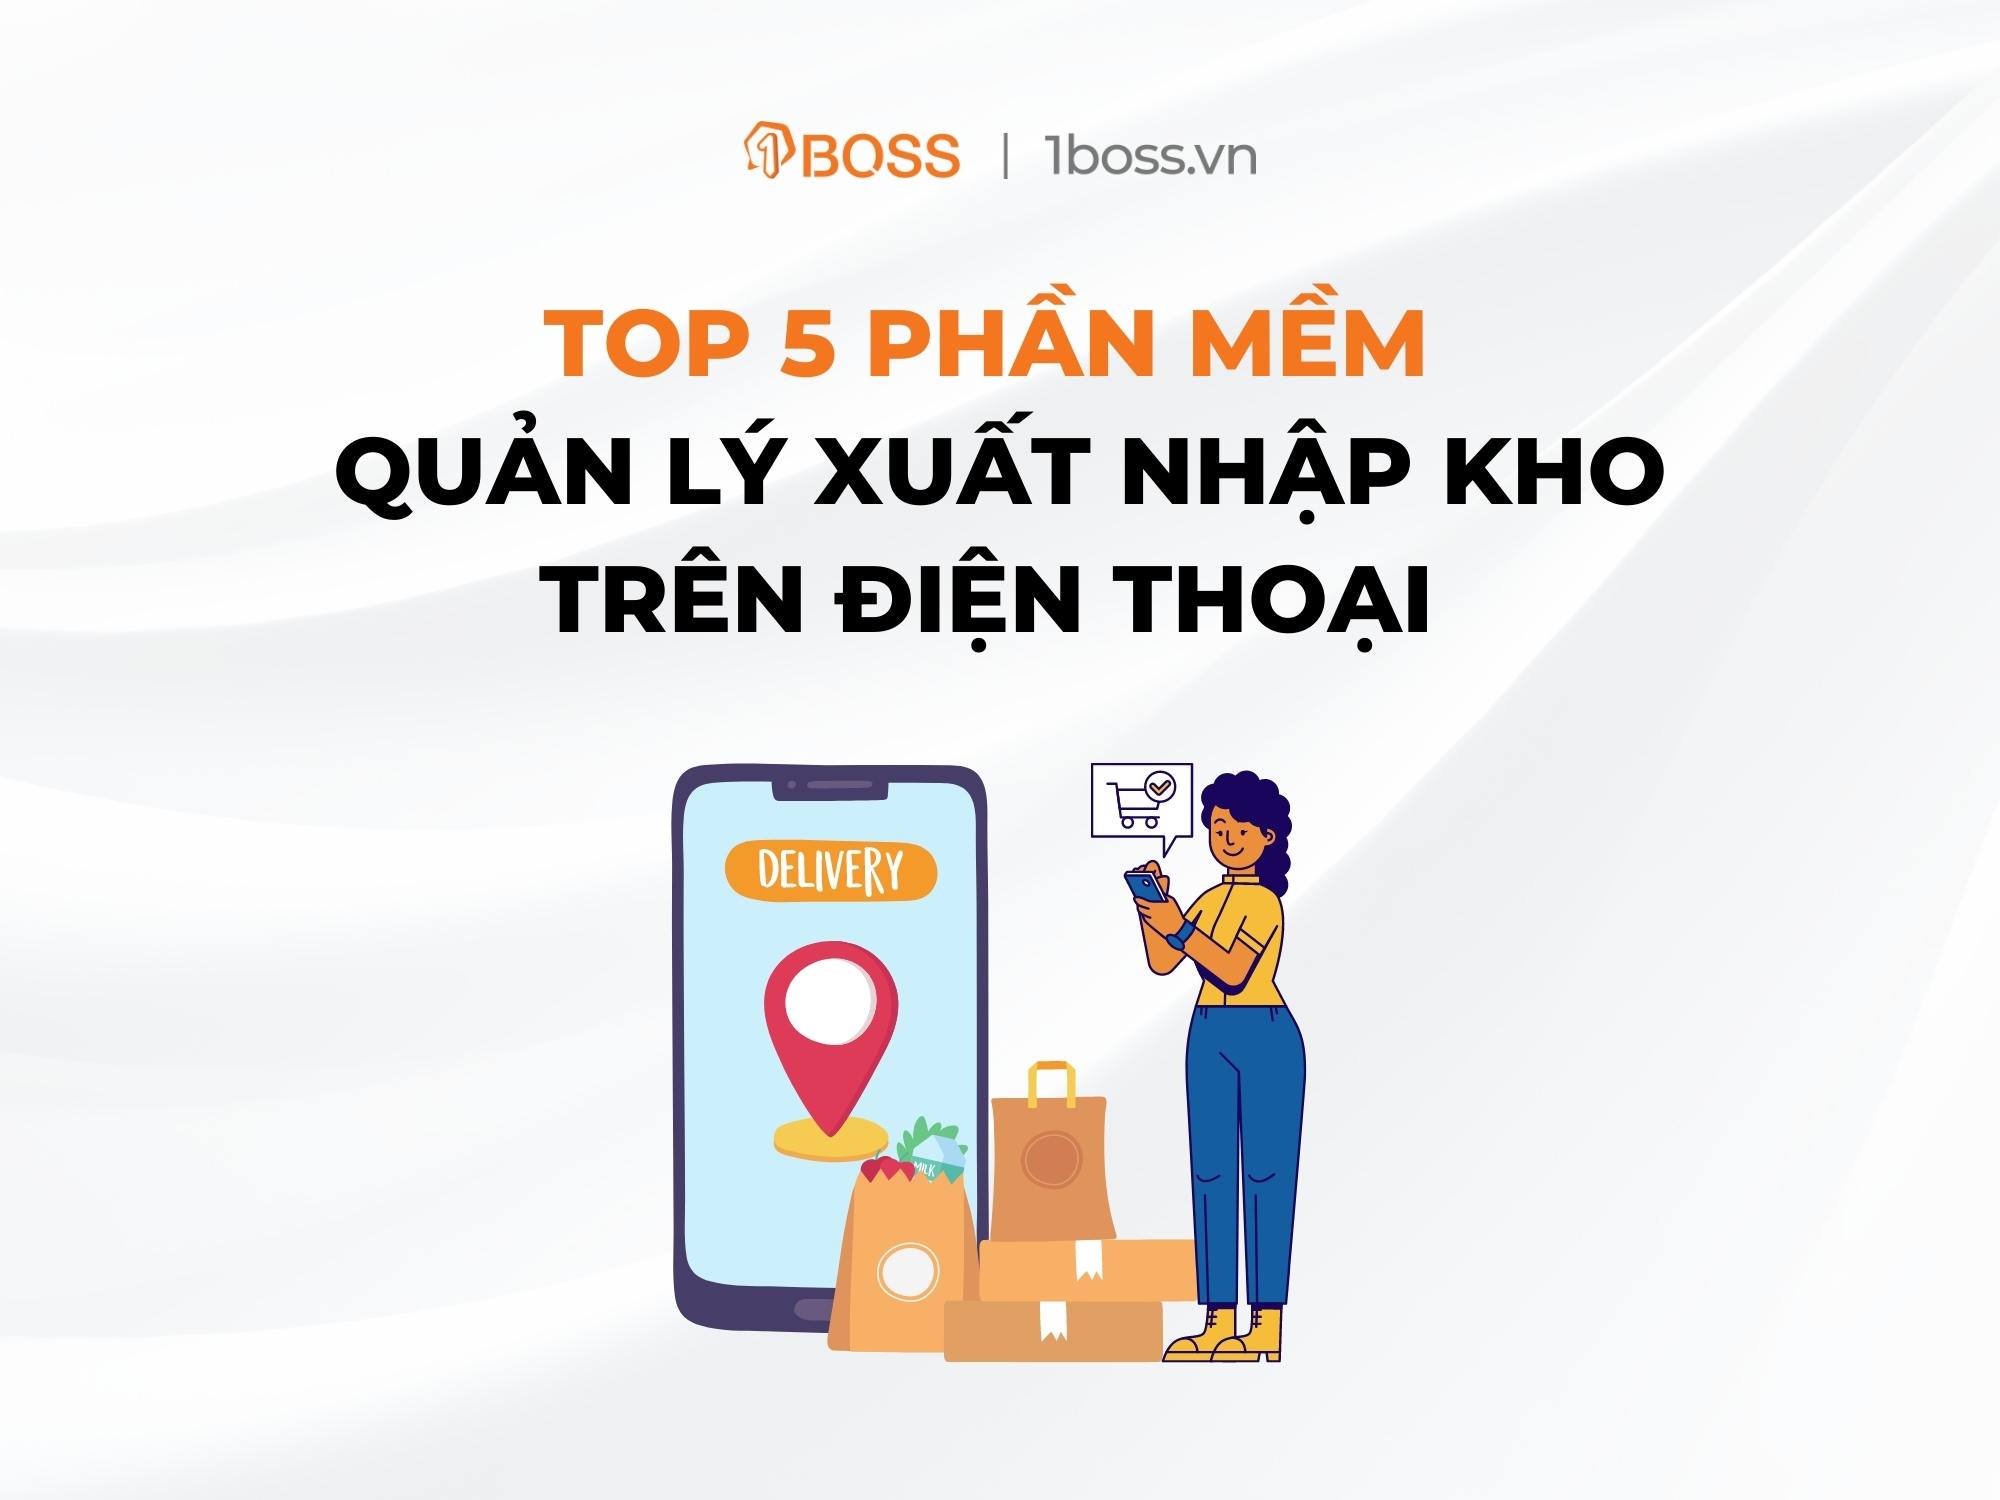 TOP 5 phần mềm quản lý xuất nhập kho trên điện thoại nổi bật nhất Việt Nam